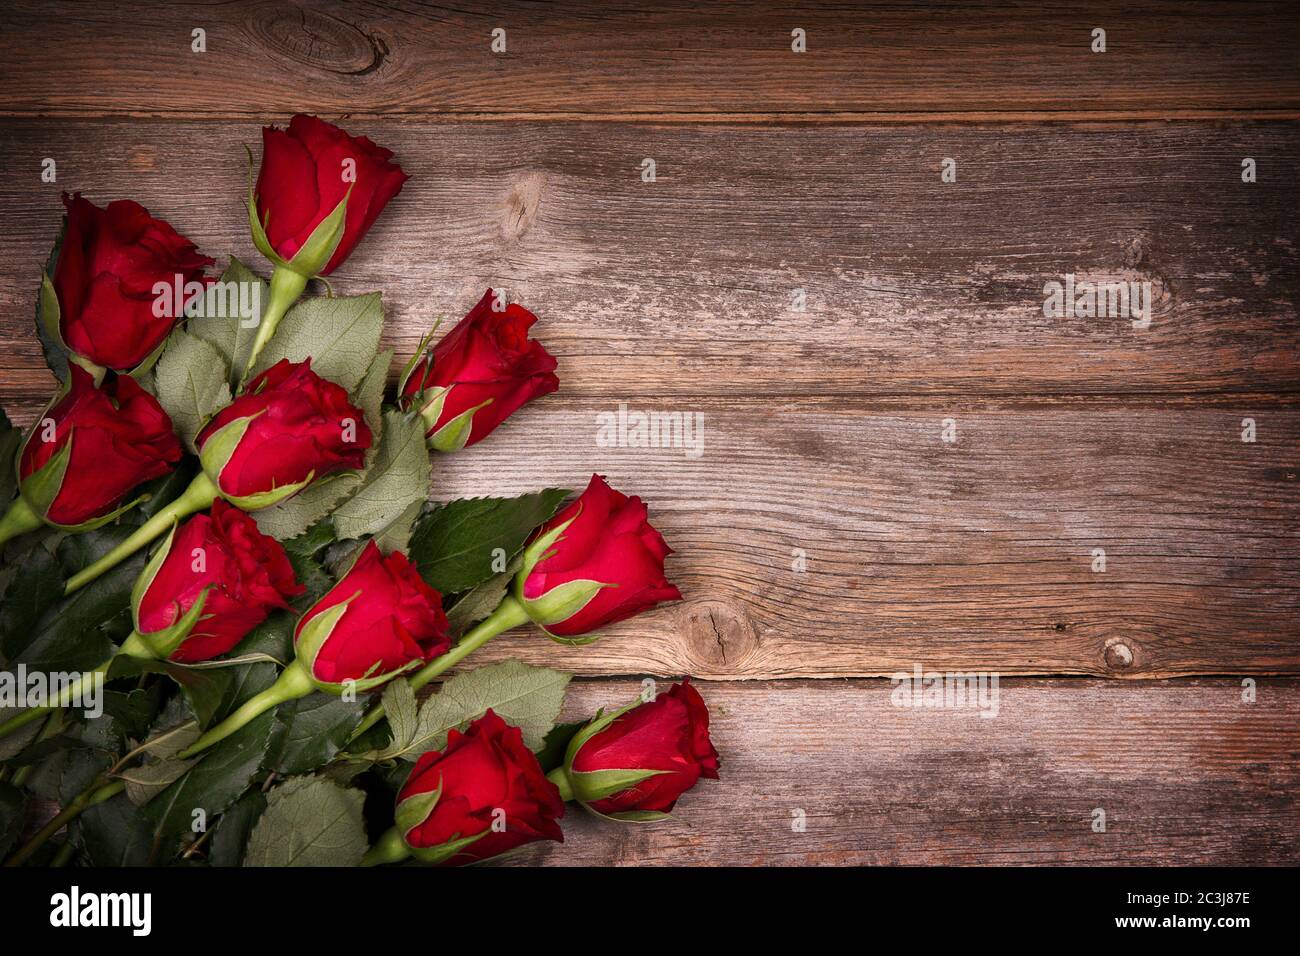 Rote Rosen über altem Holzhintergrund mit gewollter Vignette. Ideales Bild  für Geburtstag, Valentinstag und Feier Karten Stockfotografie - Alamy